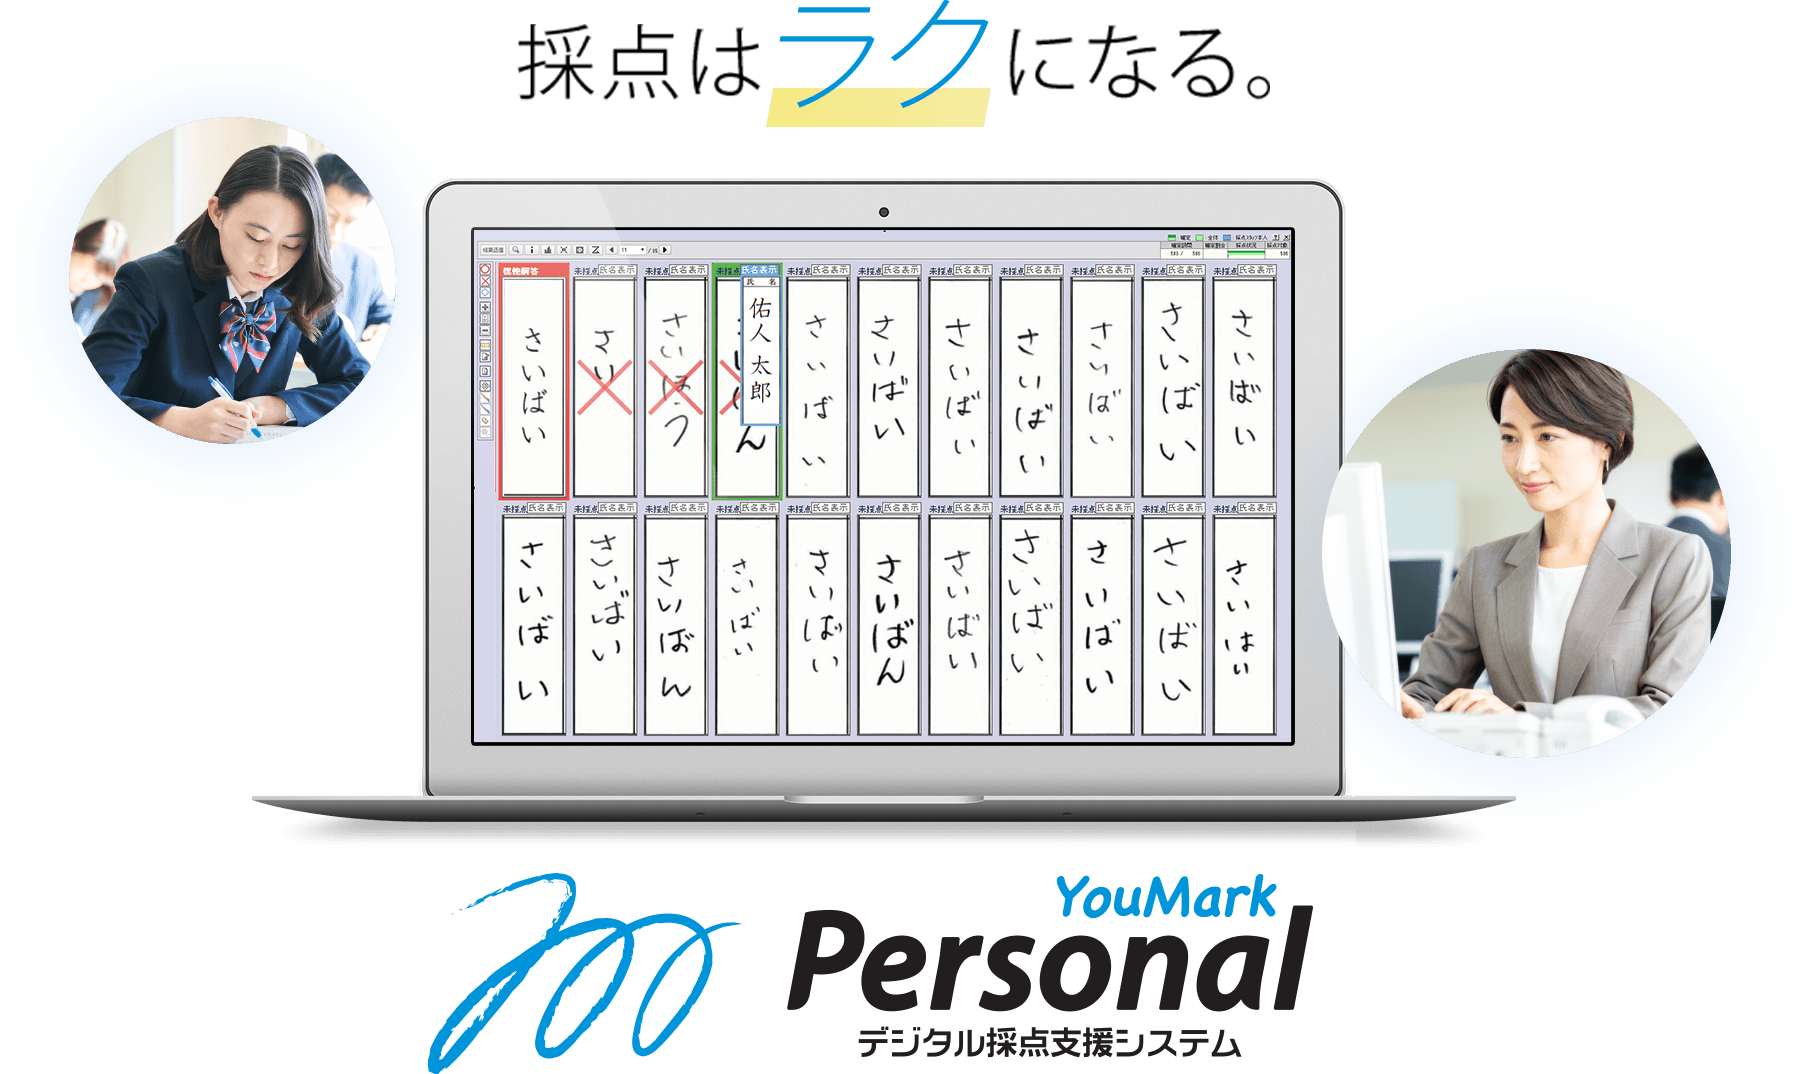 採点はラクになる 小規模向けデジタル採点「YouMark Personal」